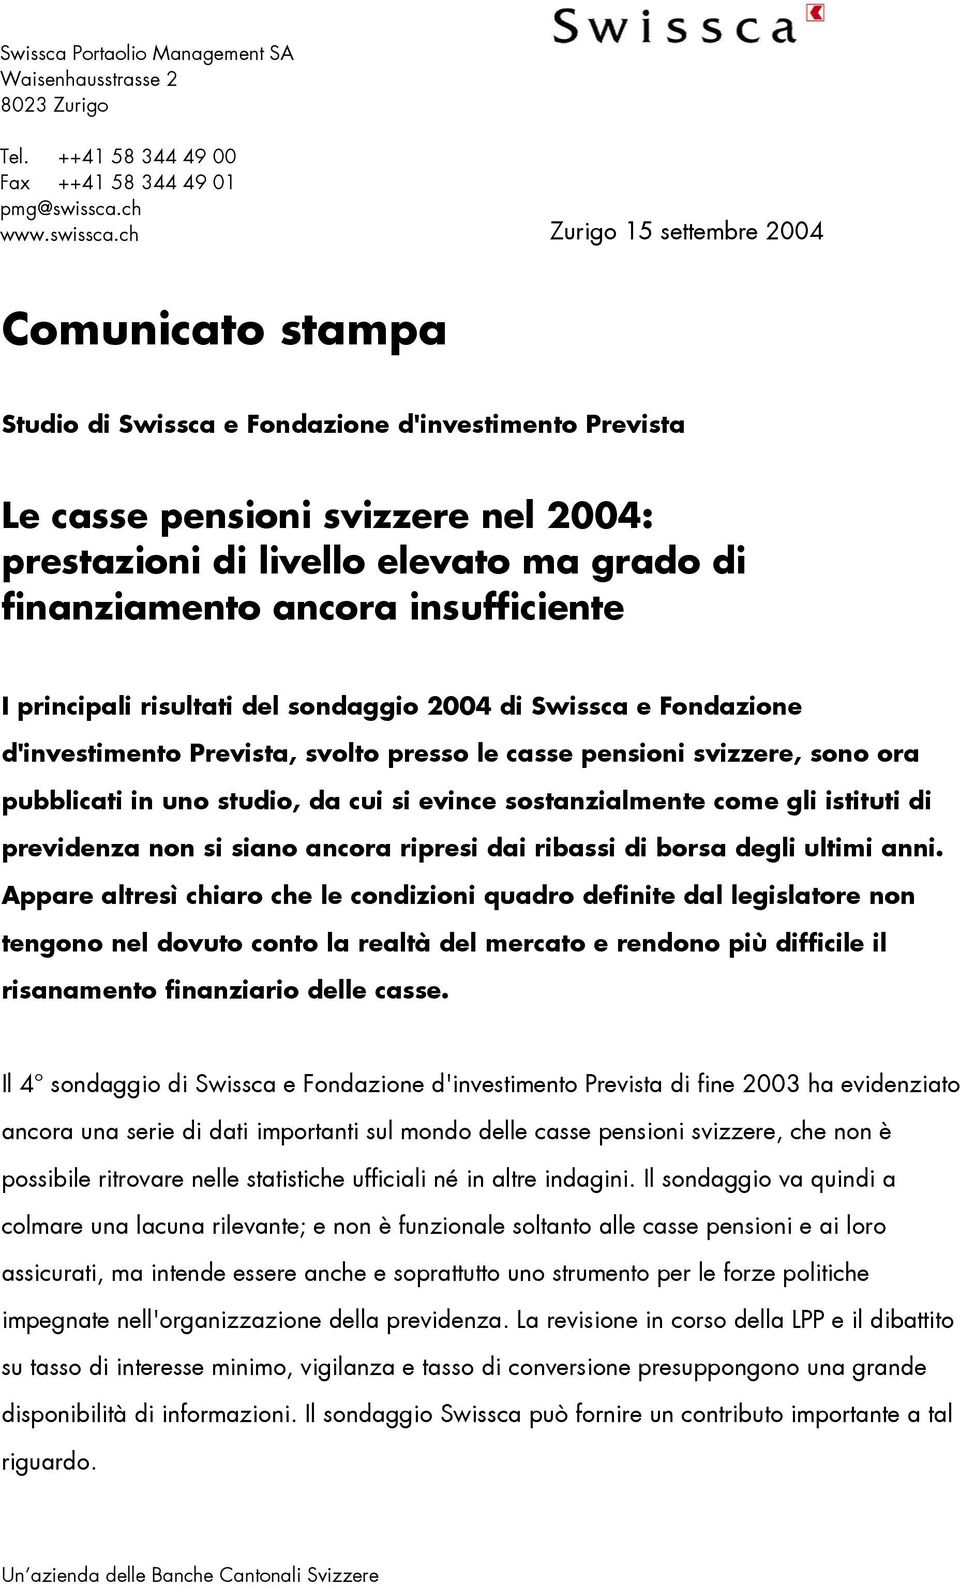 ch Zurigo 15 settembre 2004 Comunicato stampa Studio di Swissca e Fondazione d'investimento Prevista Le casse pensioni svizzere nel 2004: prestazioni di livello elevato ma grado di finanziamento